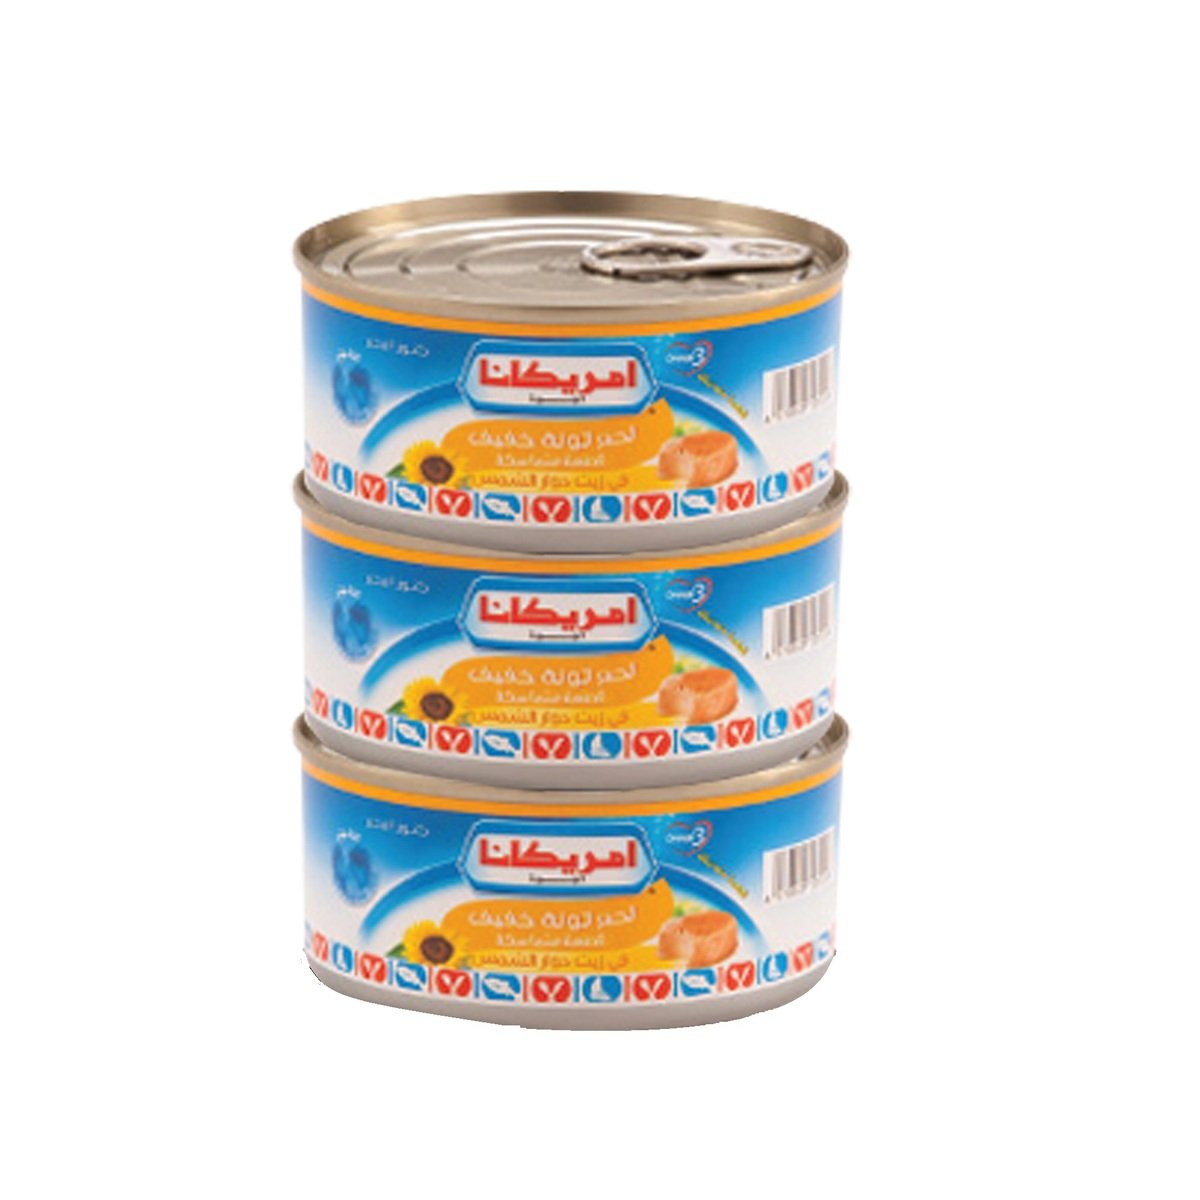 اشتري قم بشراء أمريكانا لحم تونا خفيف بالزيت النباتي 3 × 160 جم Online at Best Price من الموقع - من لولو هايبر ماركت Canned Tuna في الكويت